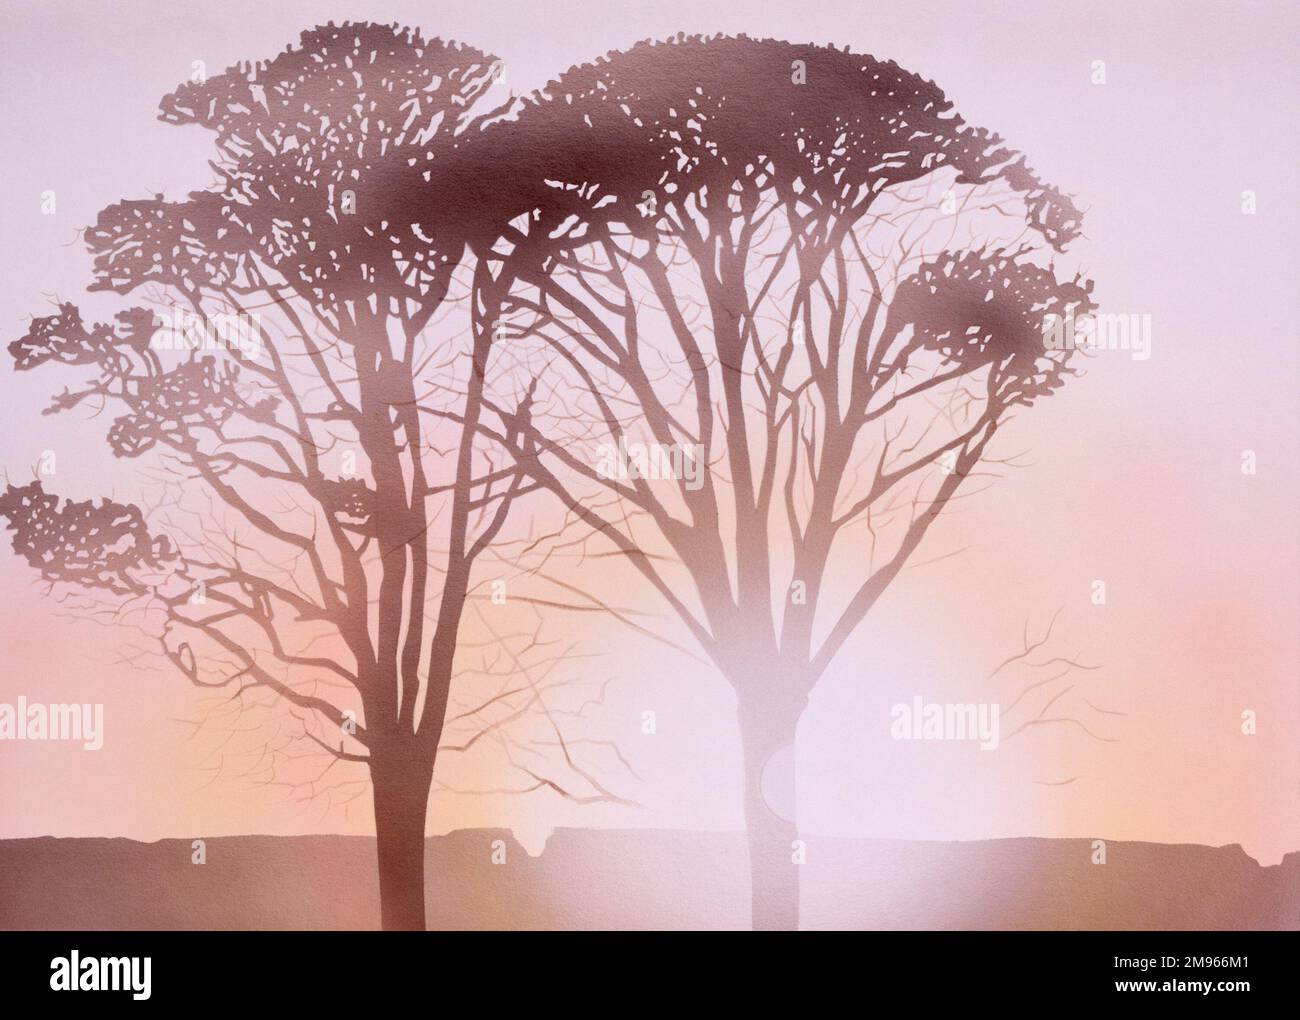 Die letzten Sonnenstrahlen des Tages werfen zwei herbstliche Bäume in eine scharfe Silhouette. Airbrush-Malerei von Malcolm Greensmith Stockfoto